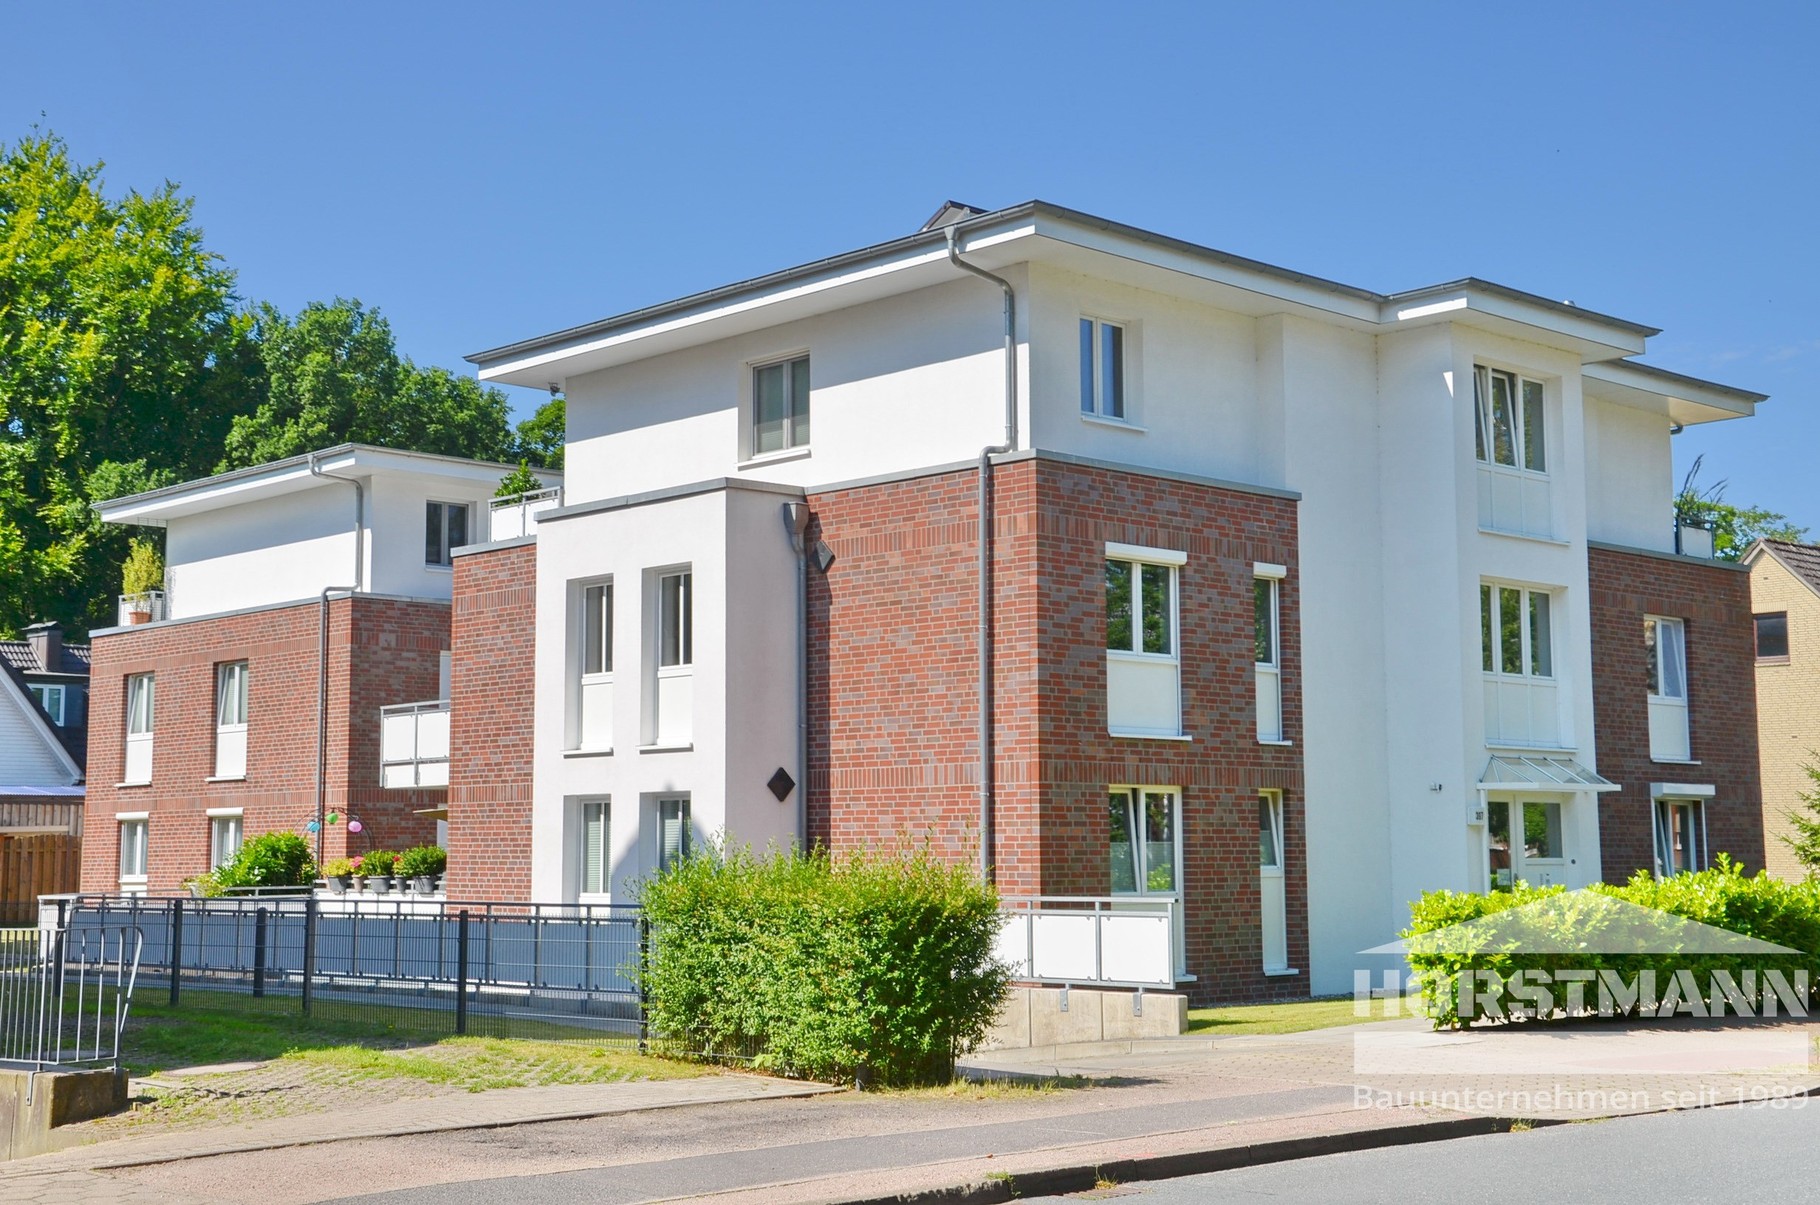 Mehrfamilienhaus - Hamburg-Rissen - Baujahr 2010 - 8 Wohneinheiten